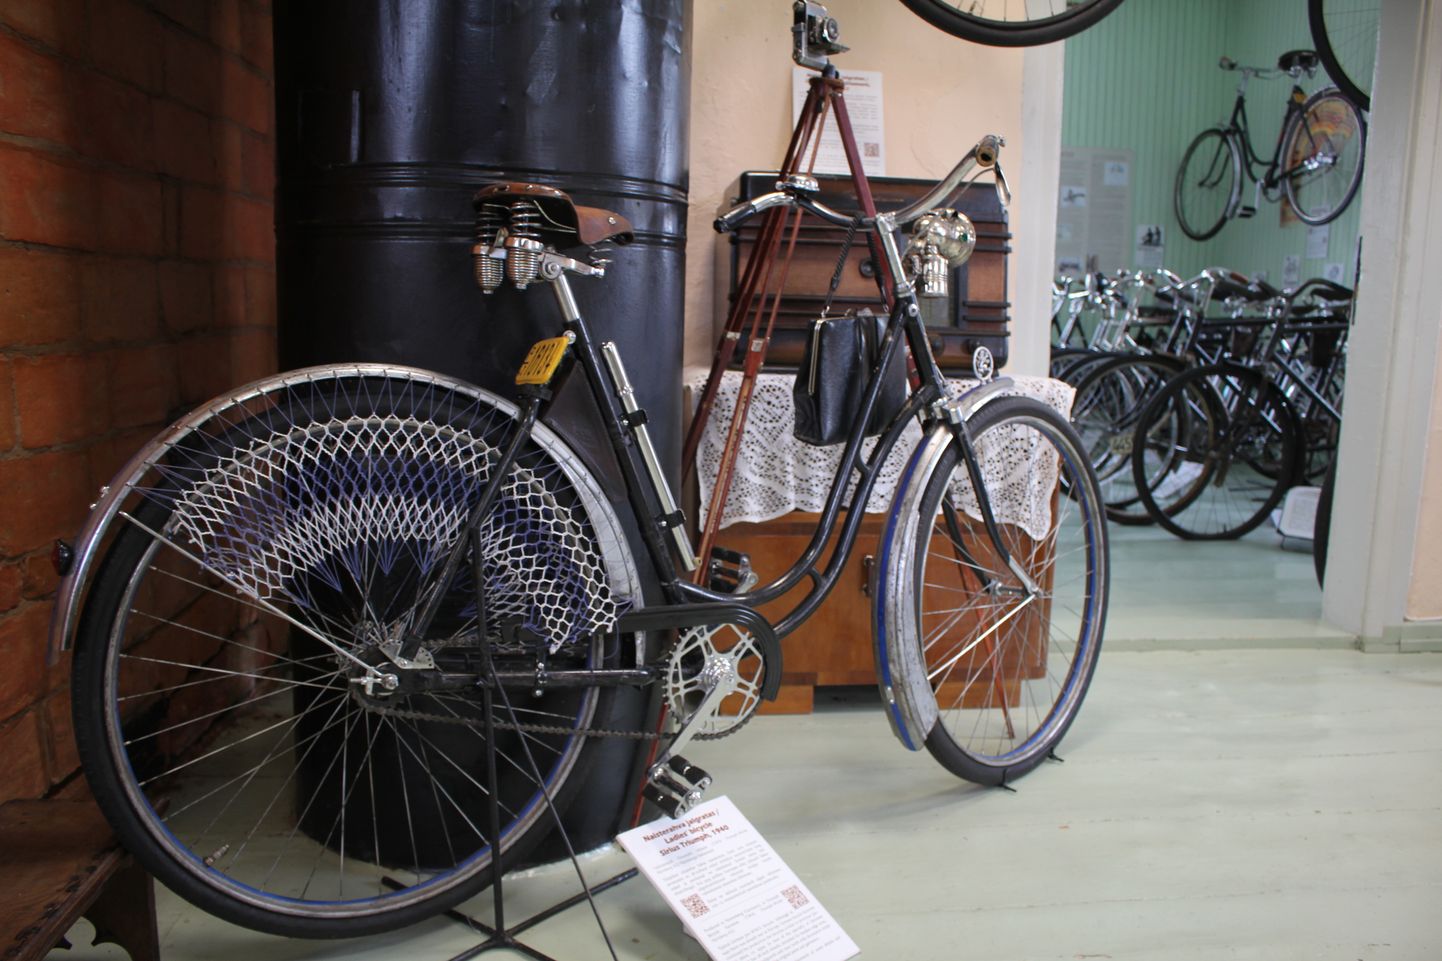 Eesti jalgrattamuuseumis  Väätsal mängitakse muuseumiööl vändaga grammofoni ja 1920.-30. aastate heliplaate.